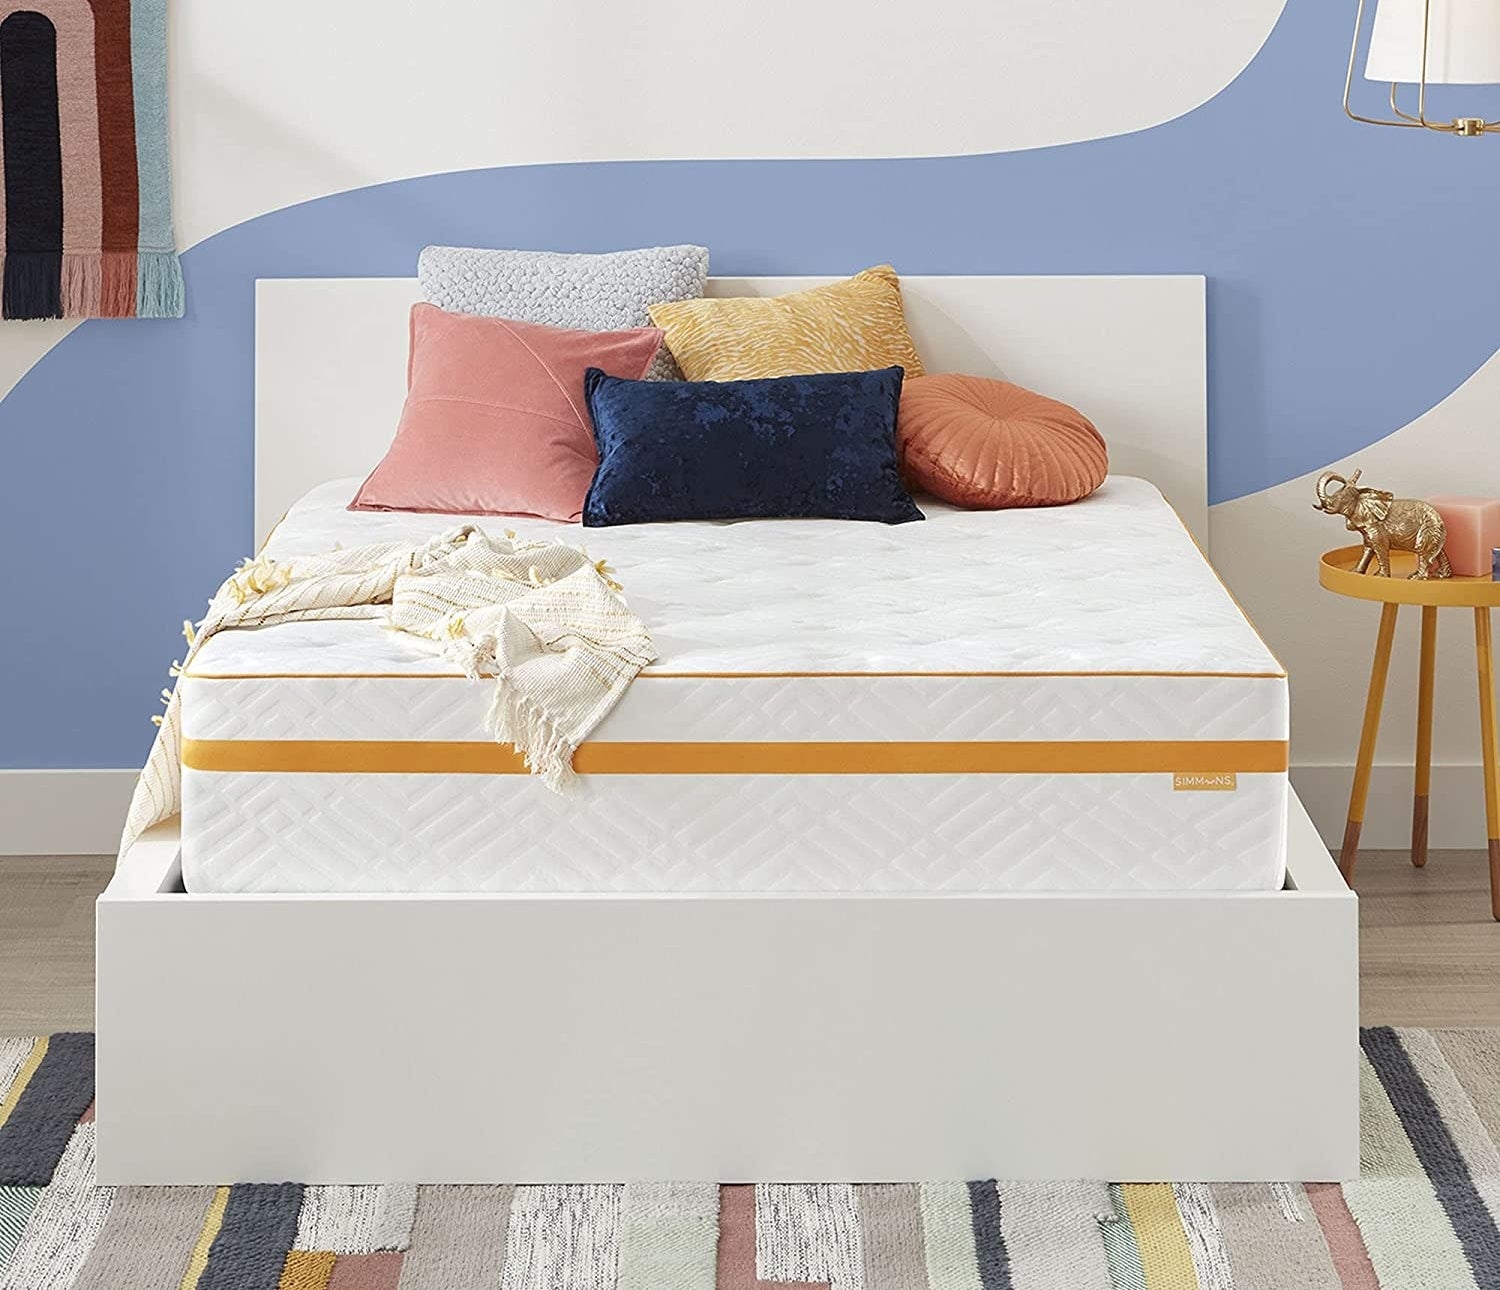 mattress on a bed frame